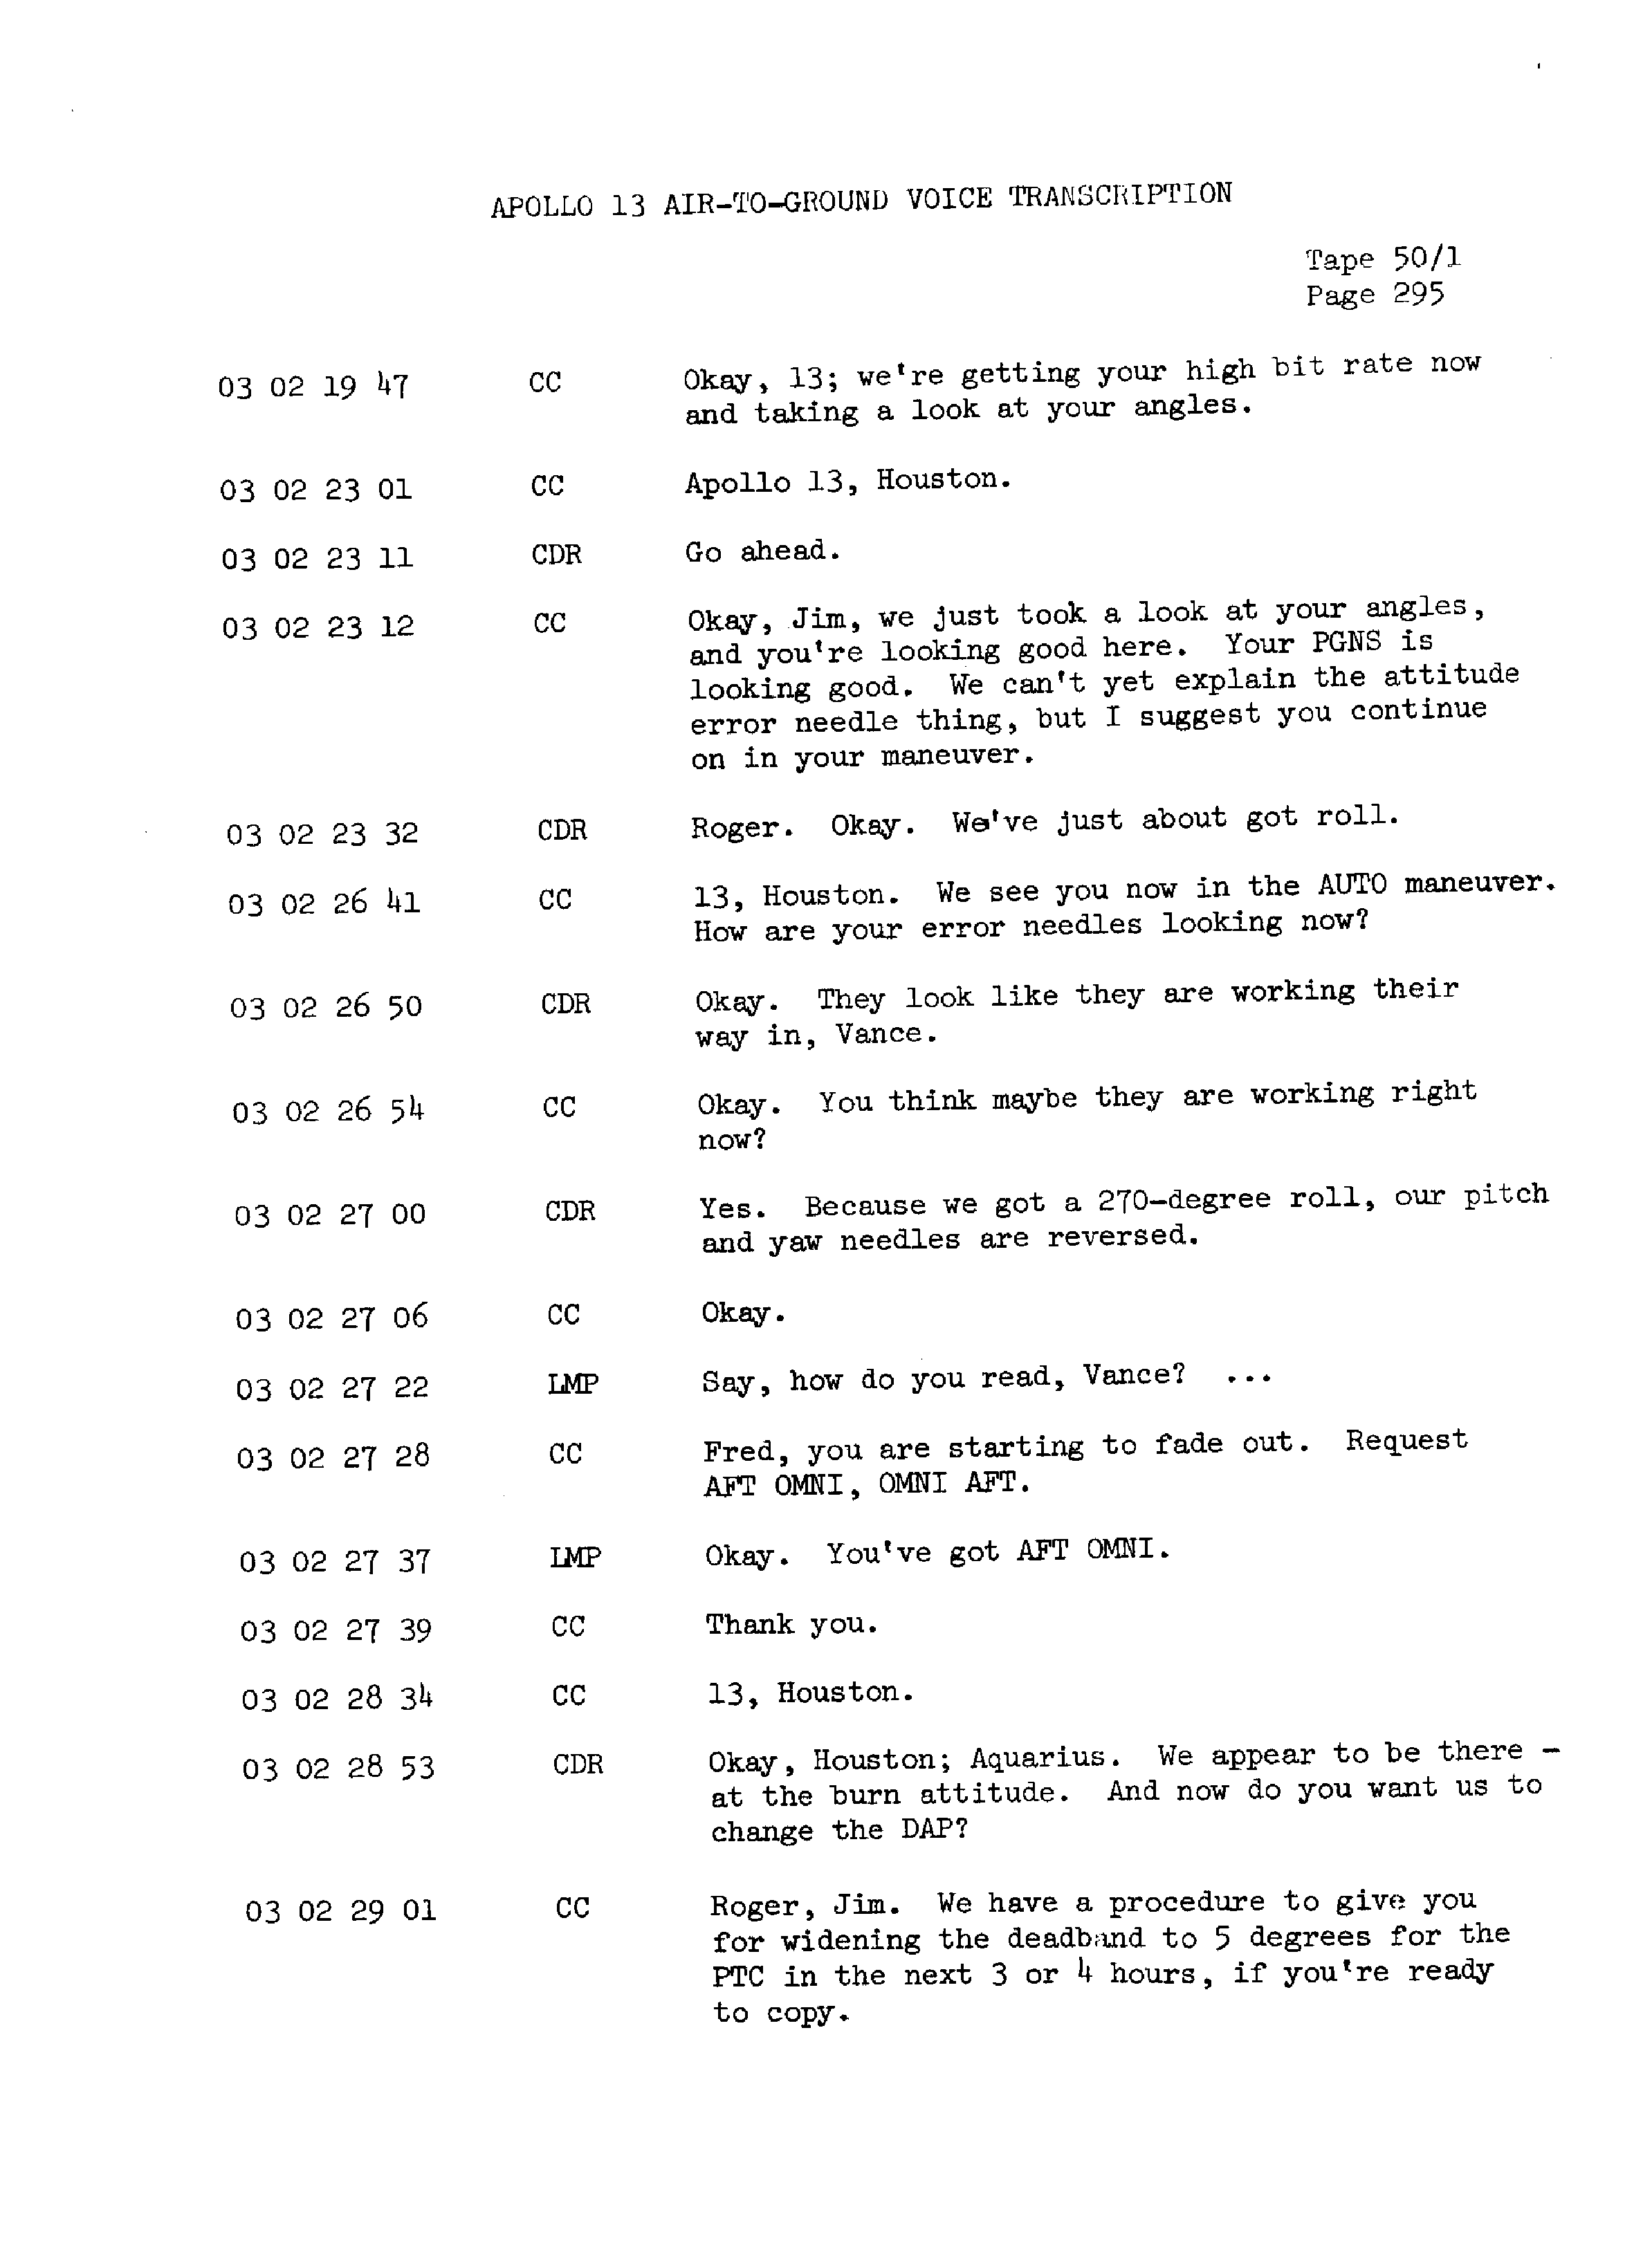 Page 302 of Apollo 13’s original transcript